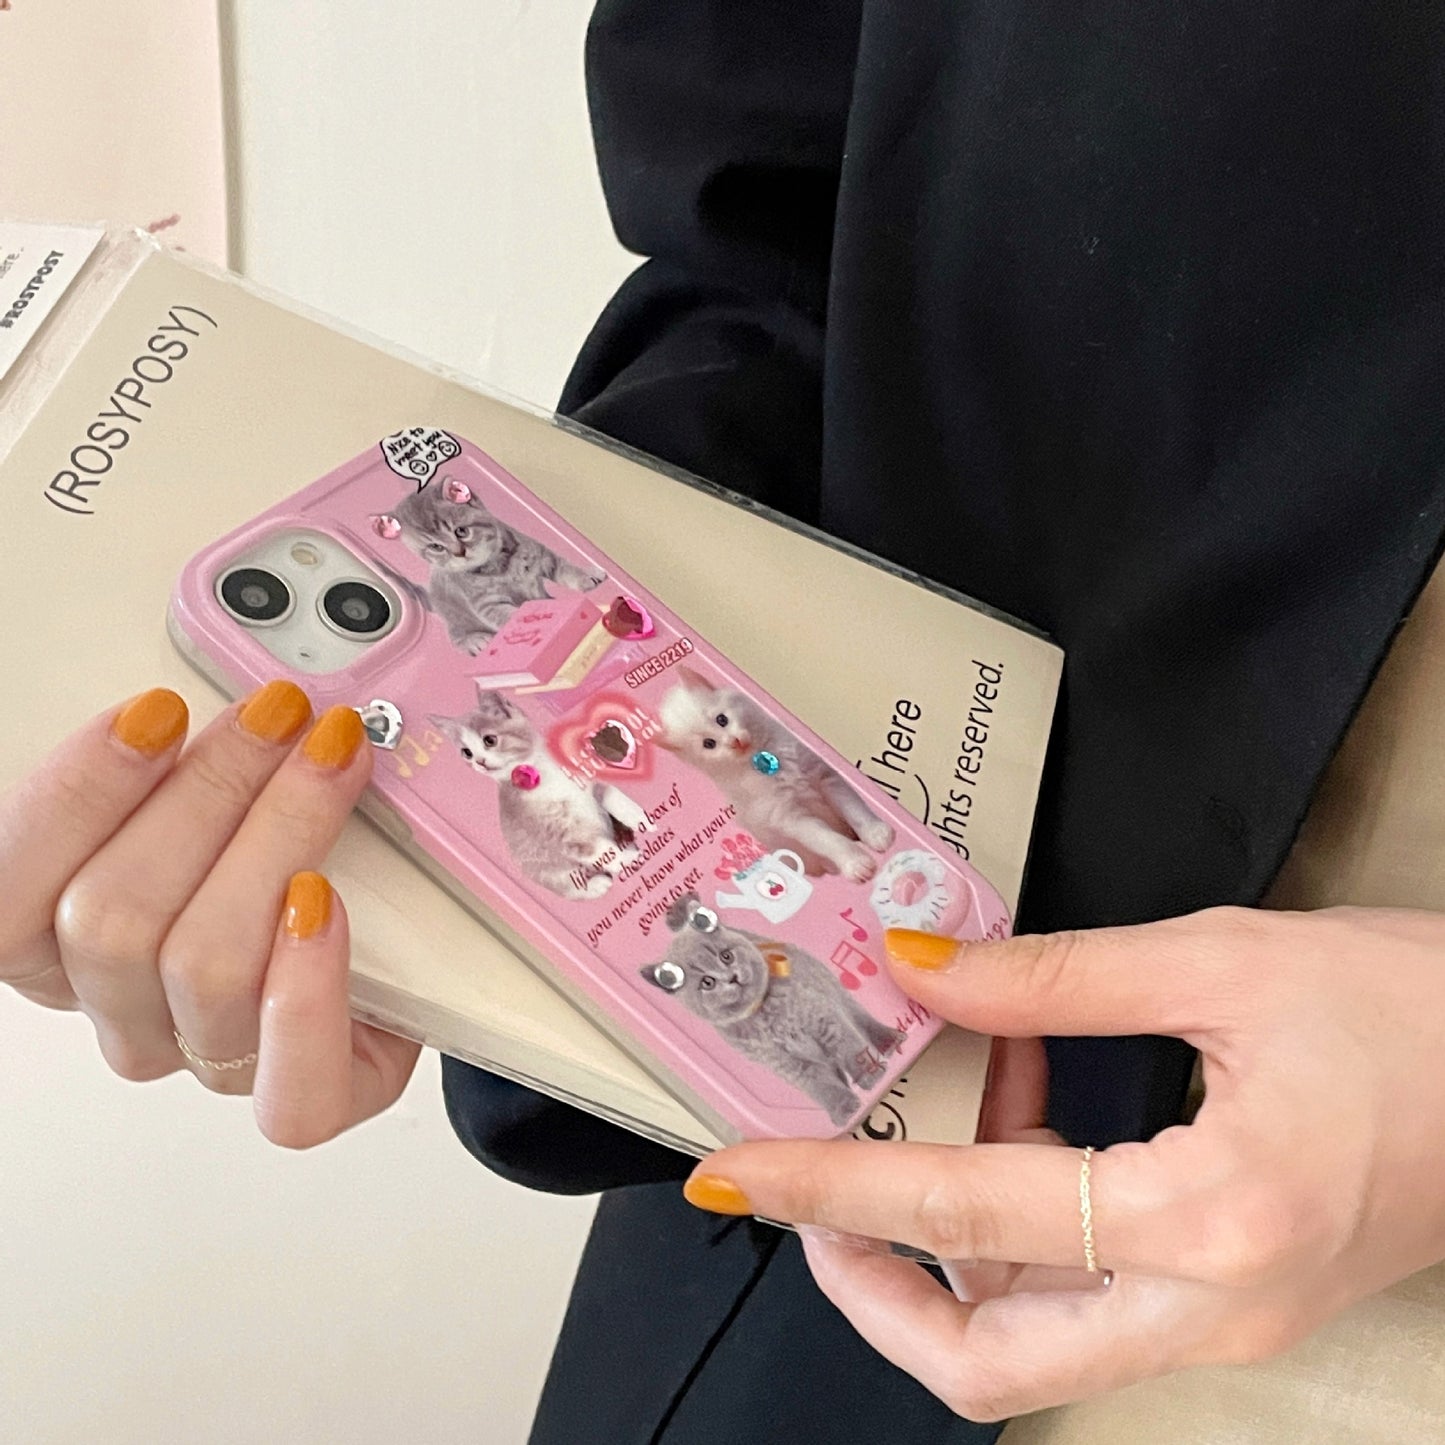 Pink cute little cat phone case